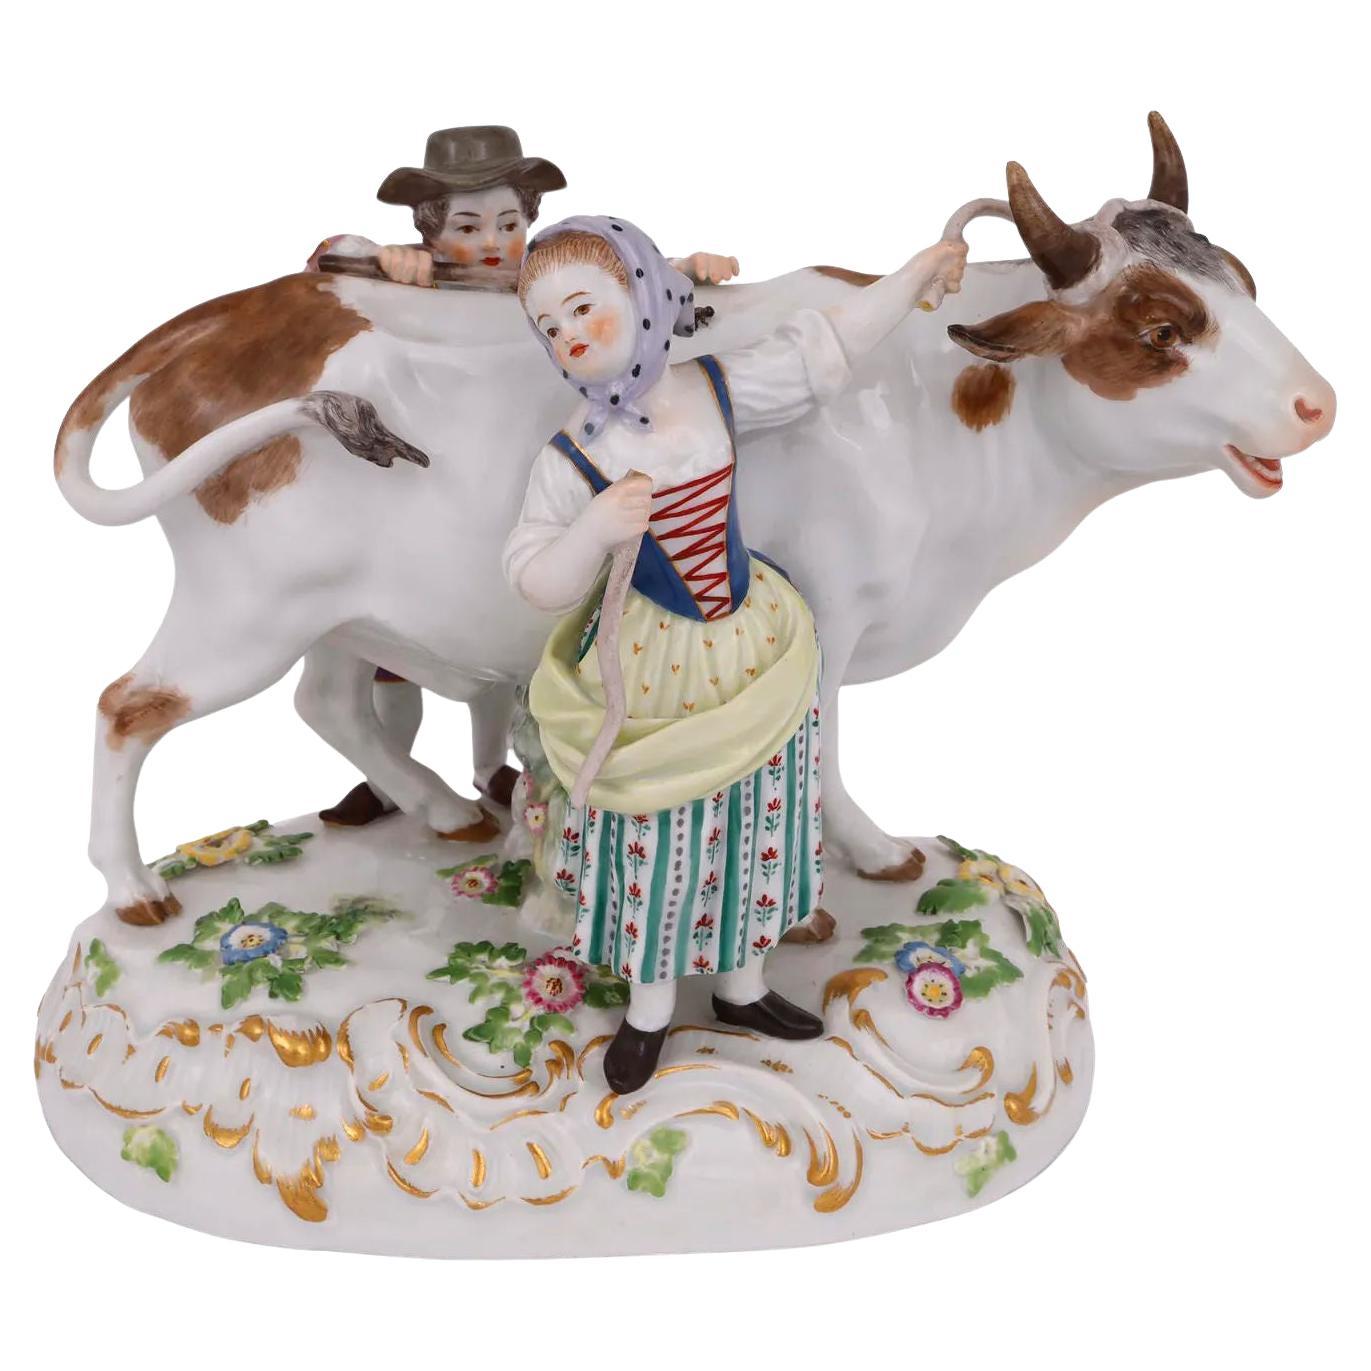 Meissener Porzellanfigur eines Stiers mit Junge und Mädchen